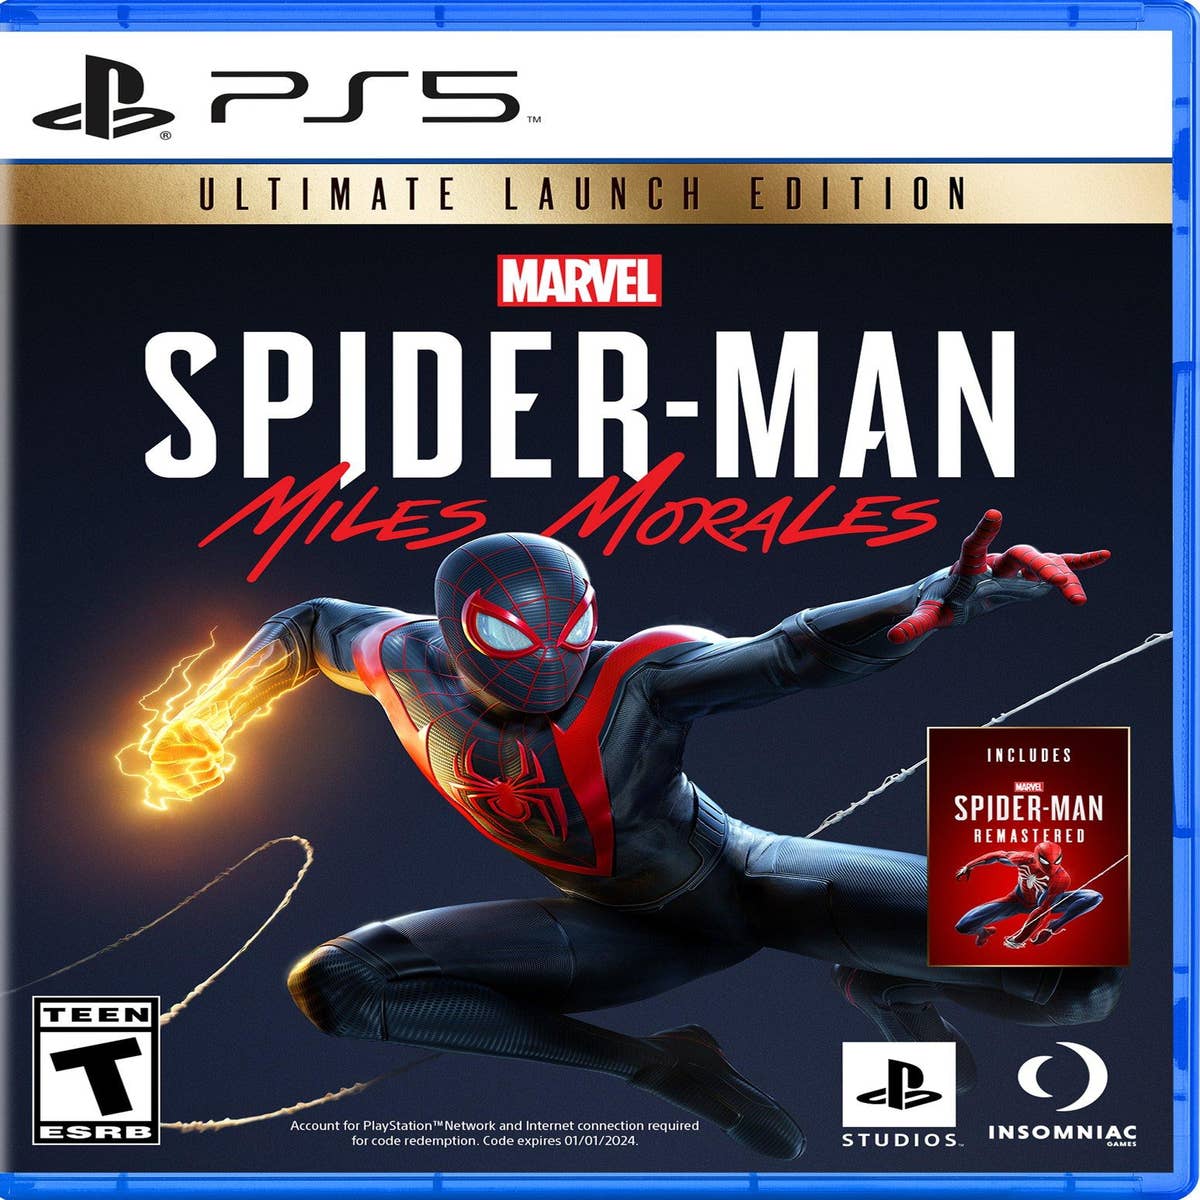 Proprietários de Spider-Man para PS4 terão que pagar pelo remaster